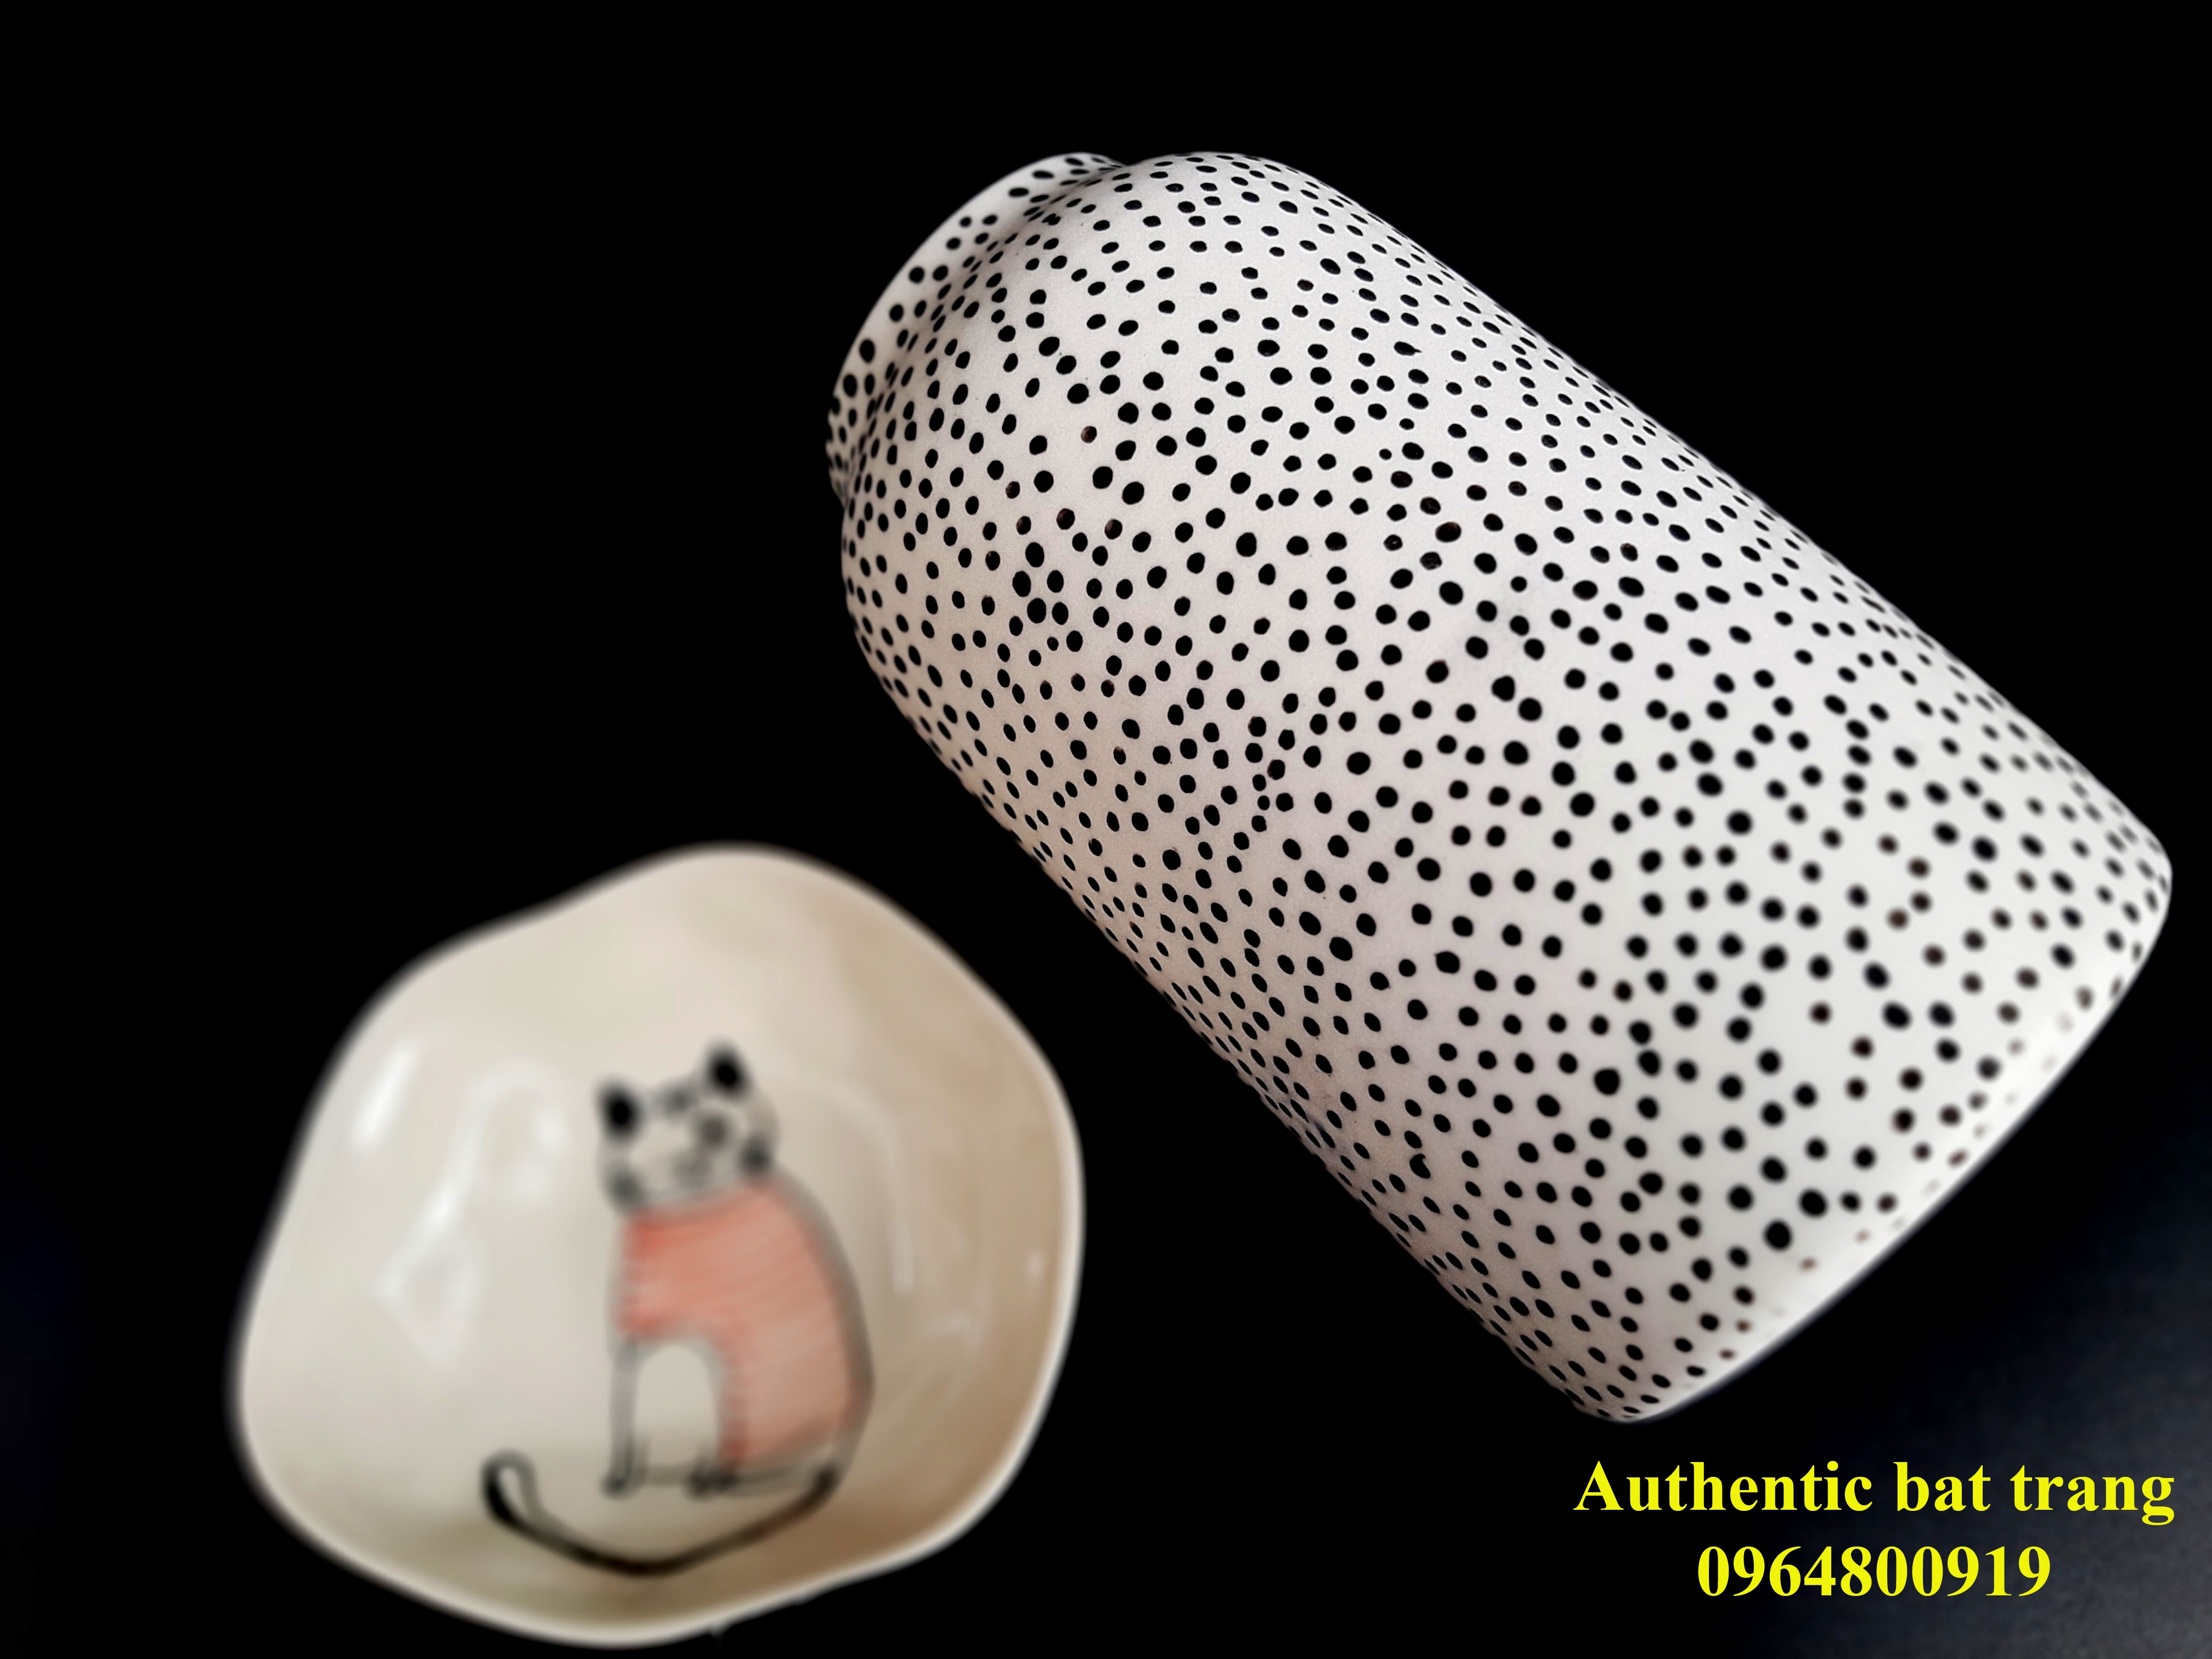 Dots vases - Beautiful hand made and hand painted ceramics vases/ Lọ hoa vuốt tay và vẽ tay sản xuất tại xưởng gốm Authentic bat trang